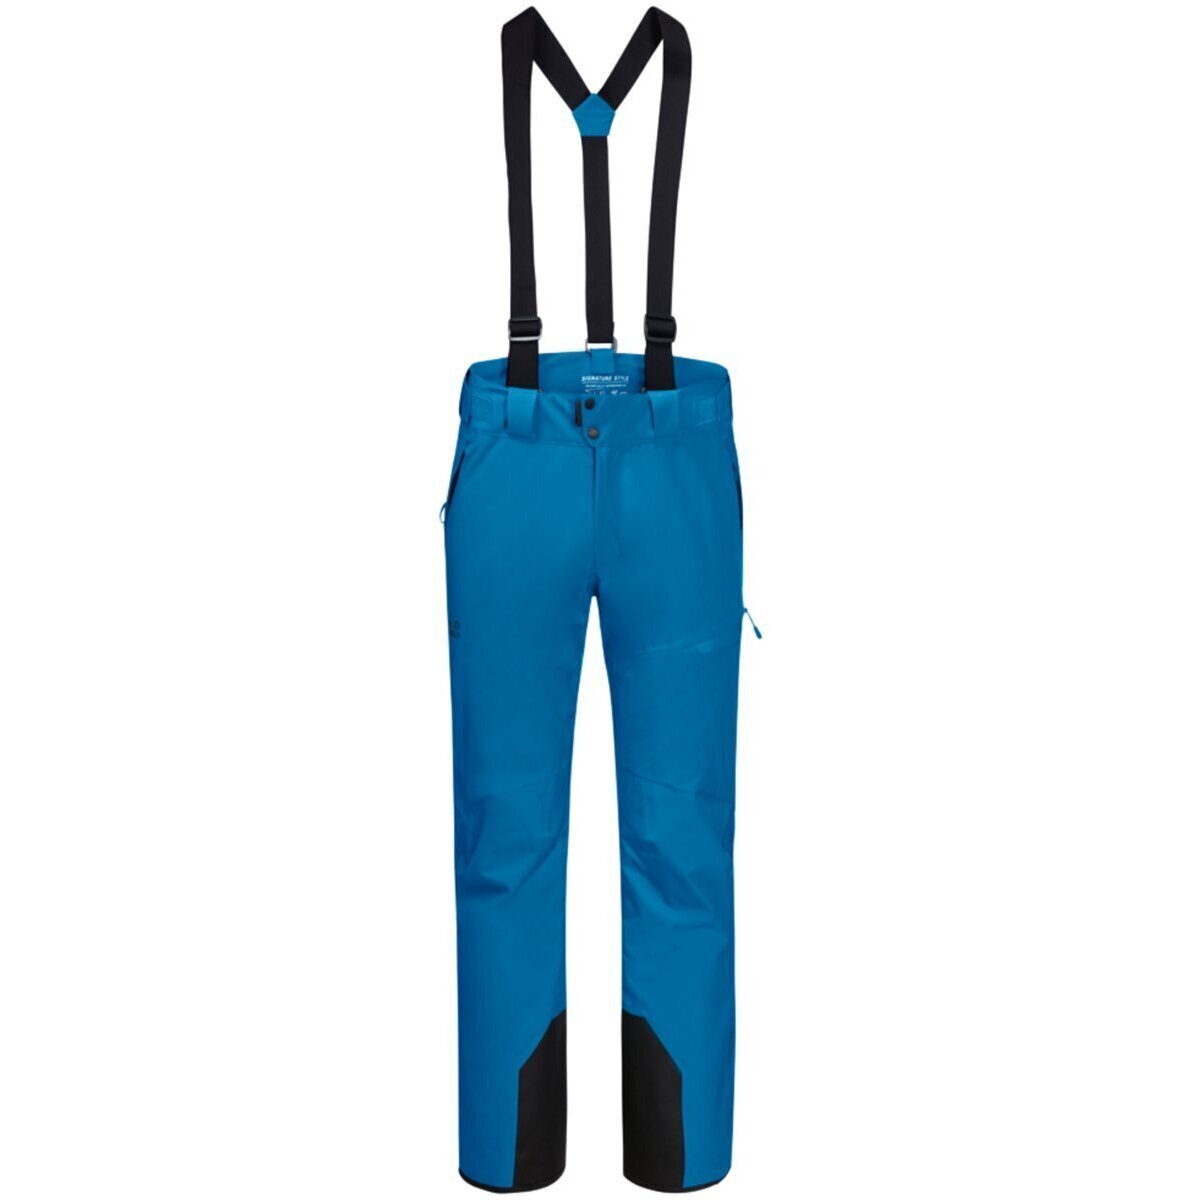 Textiel Heren Korte broeken / Bermuda's Jack Wolfskin  Blauw